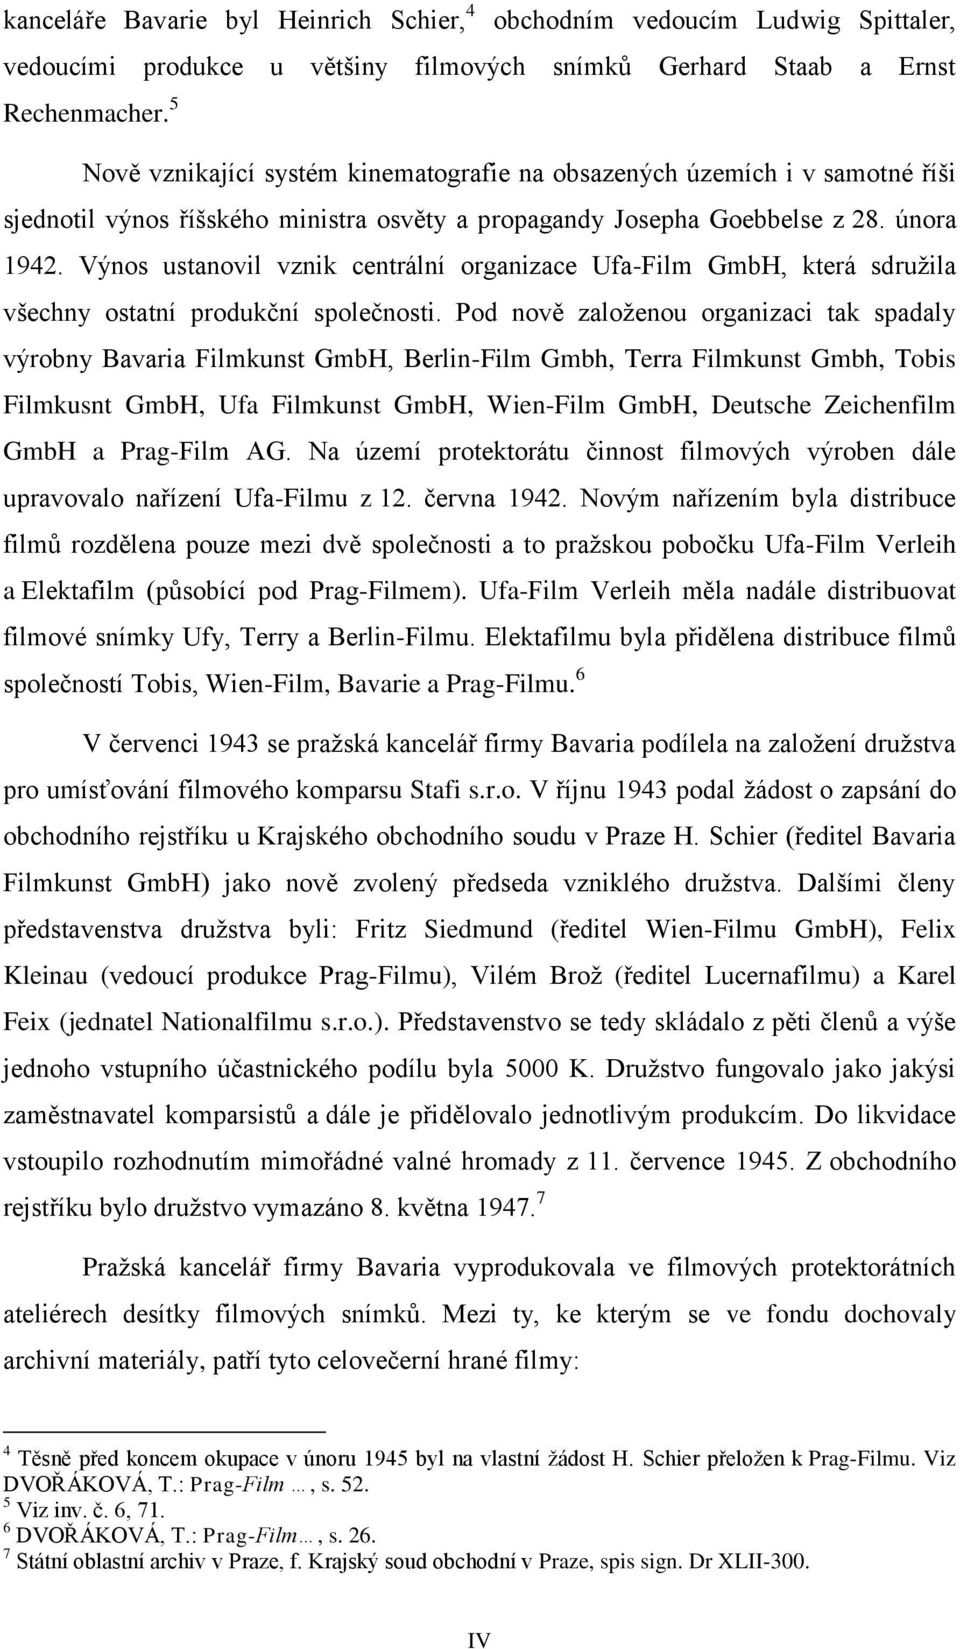 ýnos ustanovil vznik centrální organizace Ufa-Film GmbH, která sdružila všechny ostatní produkční společnosti.